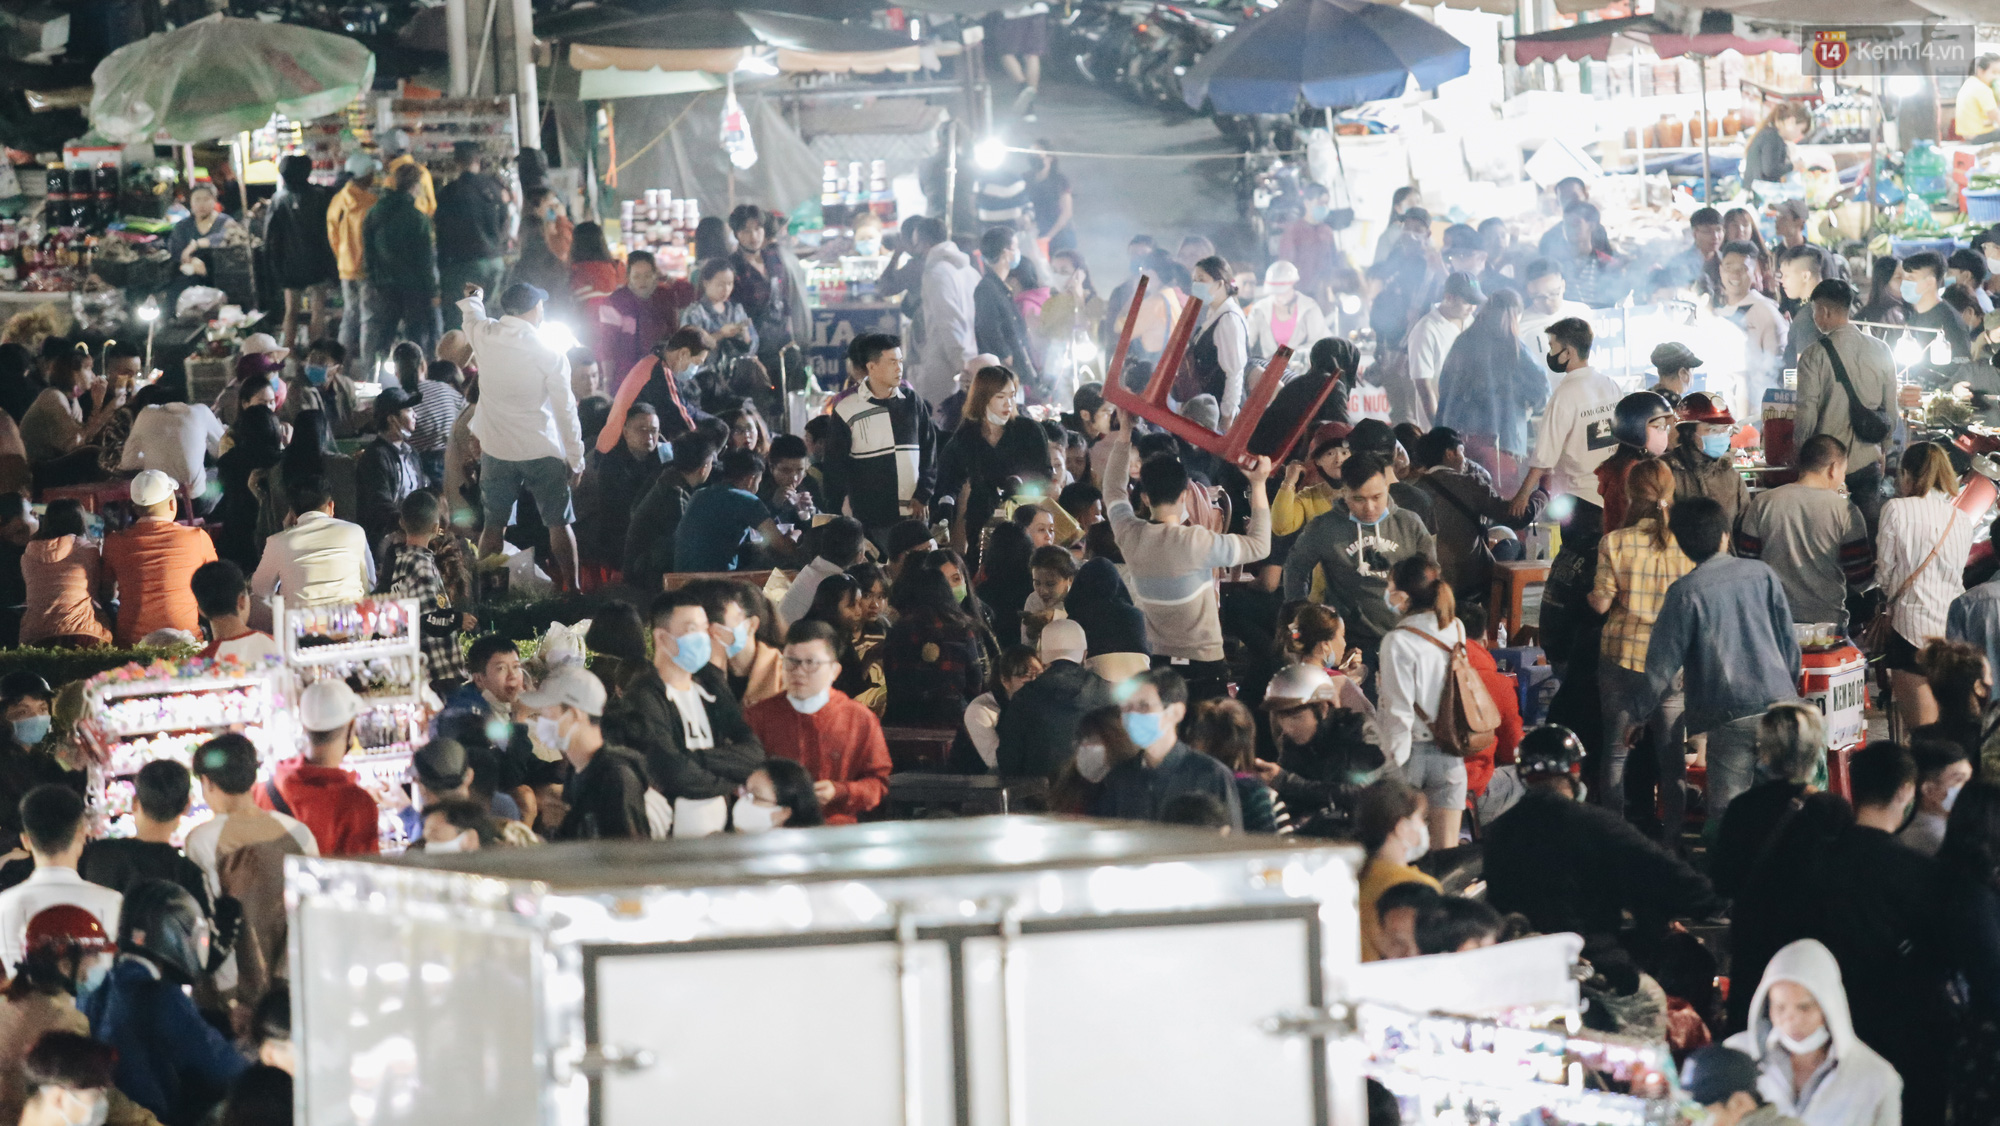 Chùm ảnh: Chợ đêm Đà Lạt không còn chỗ trống, khách du lịch ngồi la liệt từ trong ra ngoài để ăn uống dịp nghỉ lễ - Ảnh 7.